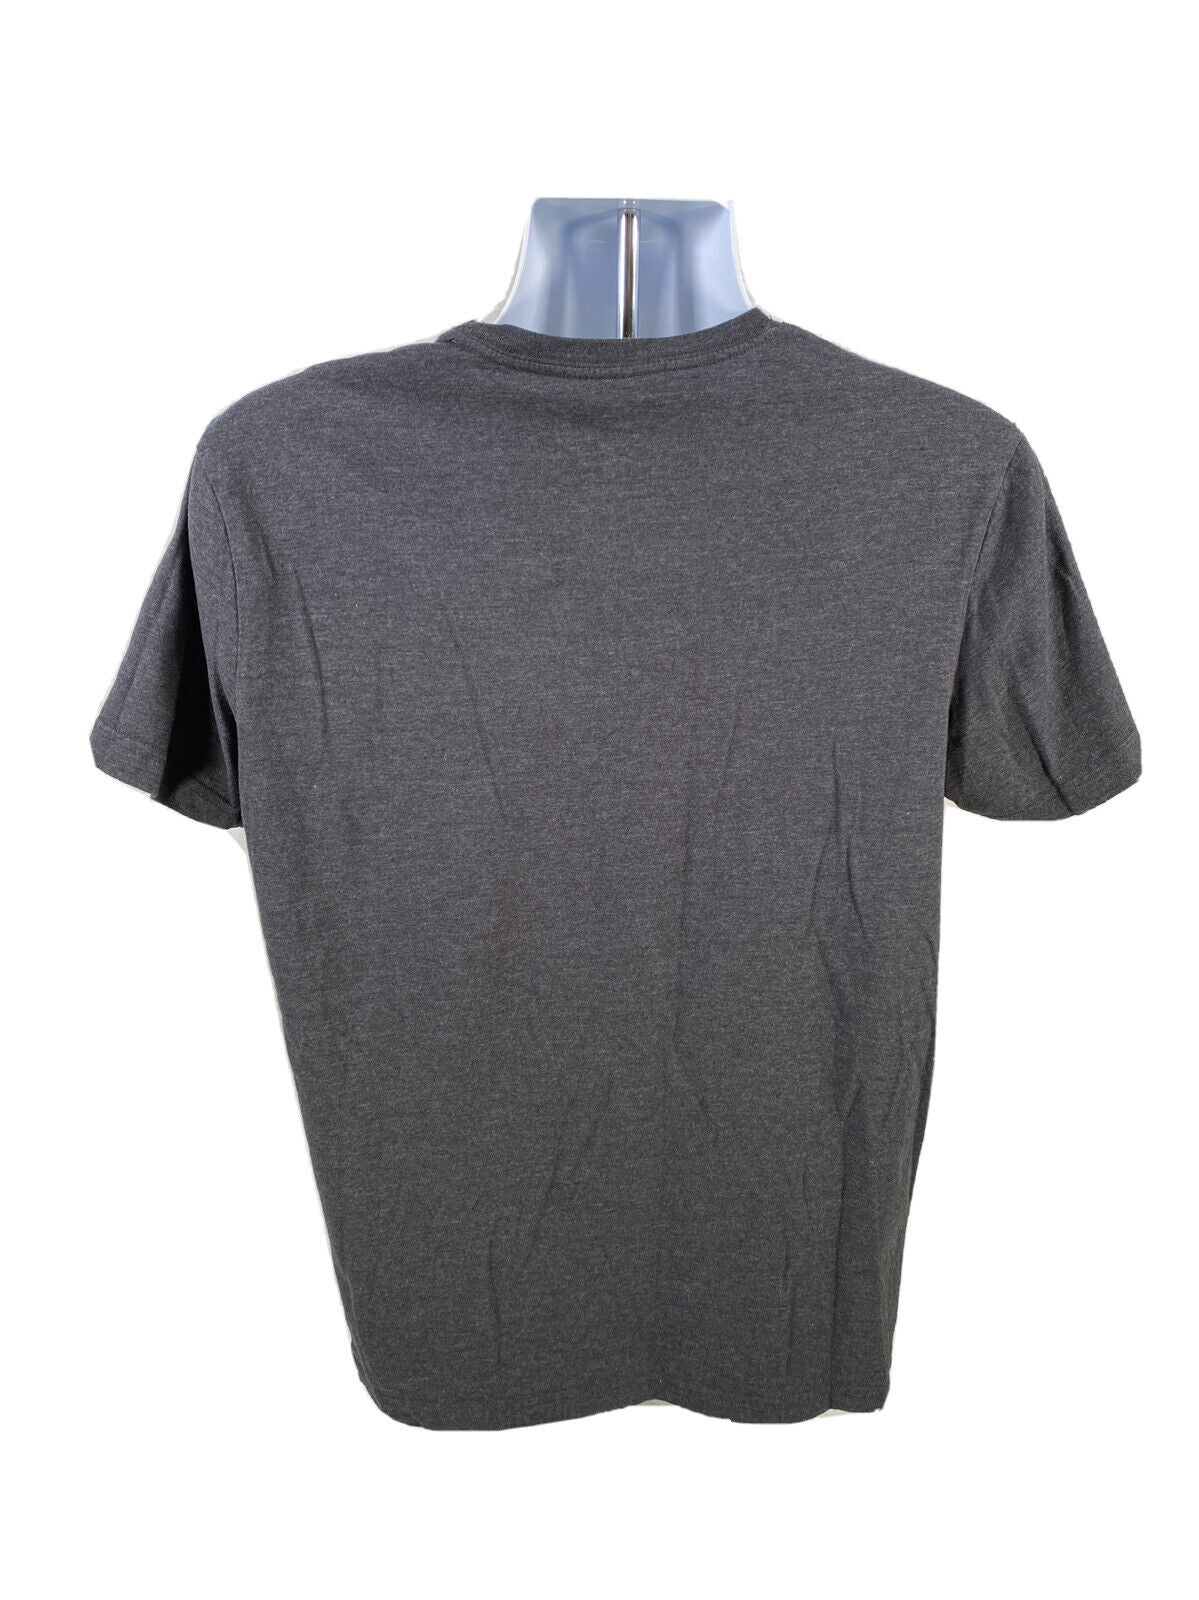 Levis Men's Gray Short Sleeve Crewneck T-Shirt - L